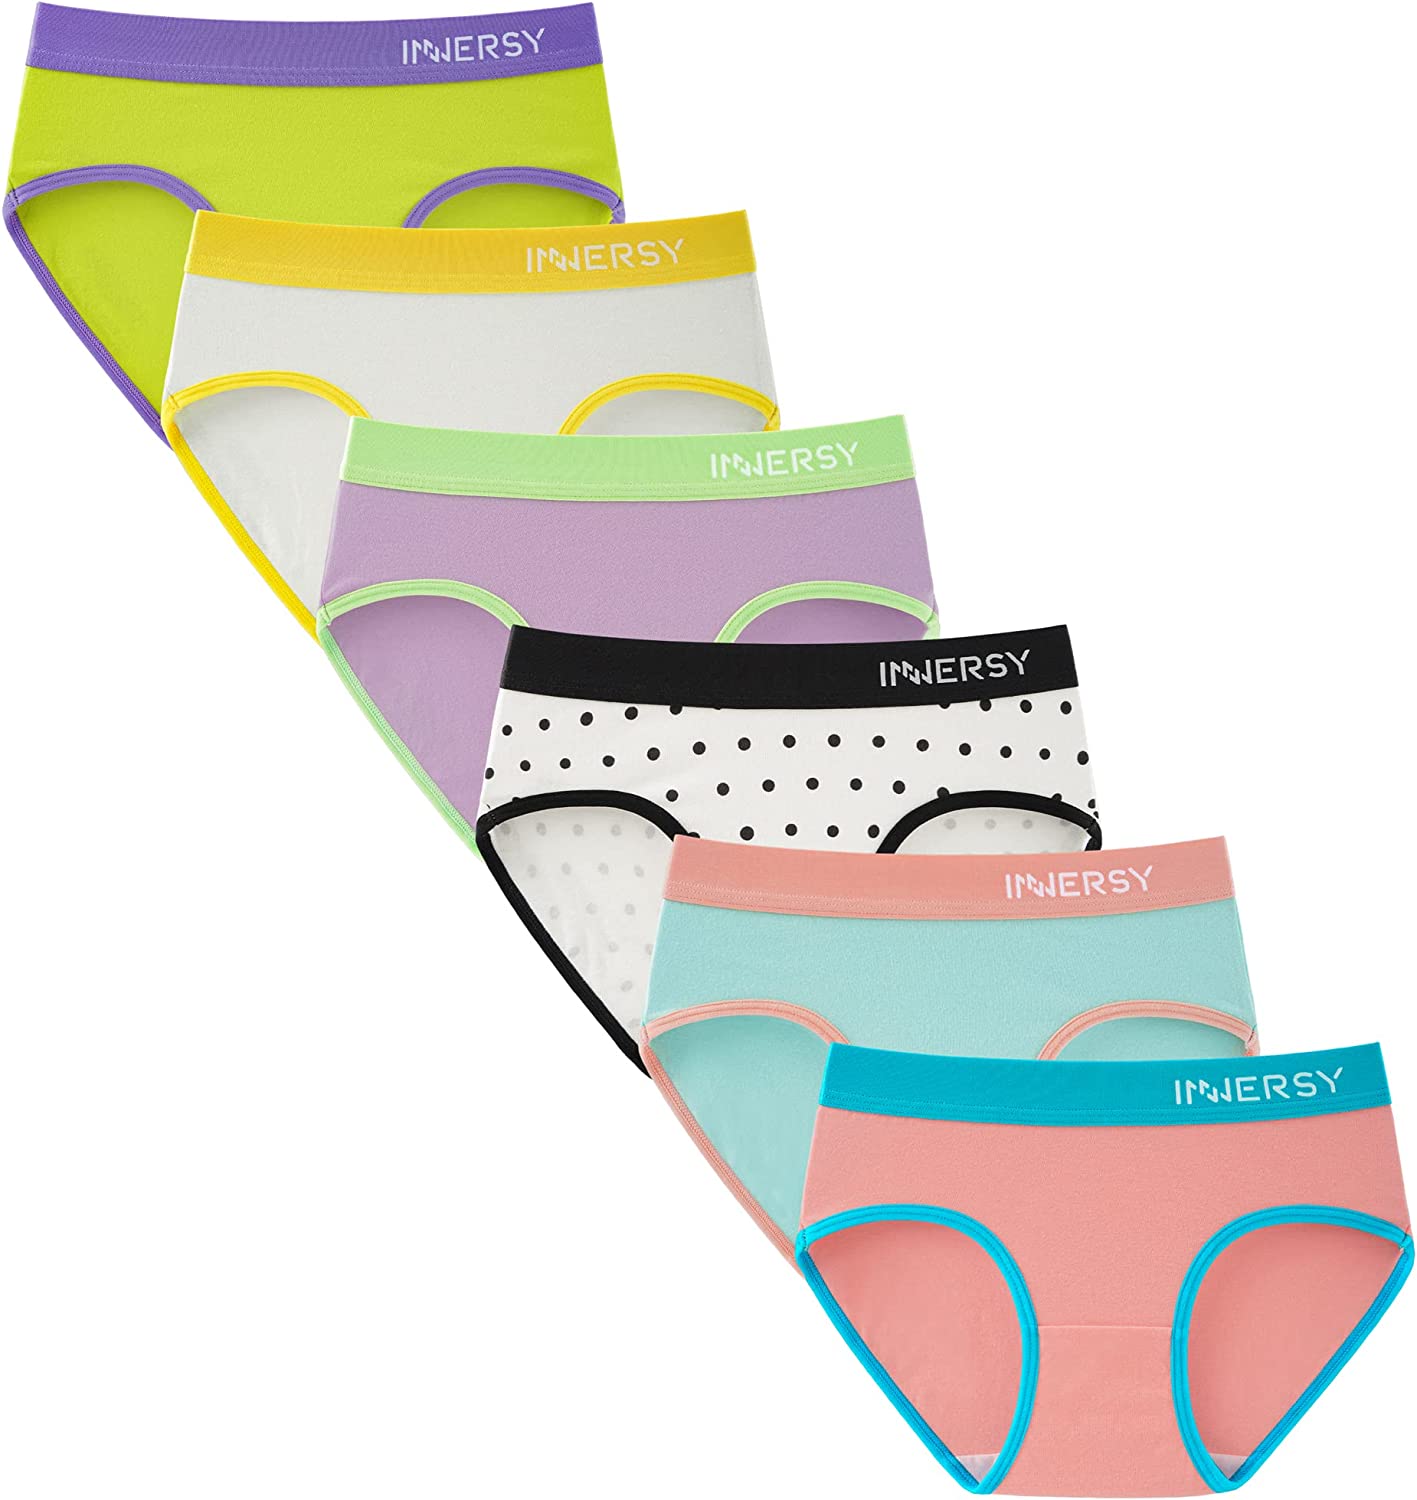 Hanes Girls and Toddler Underwear, Cotton Knit Tagless Brief